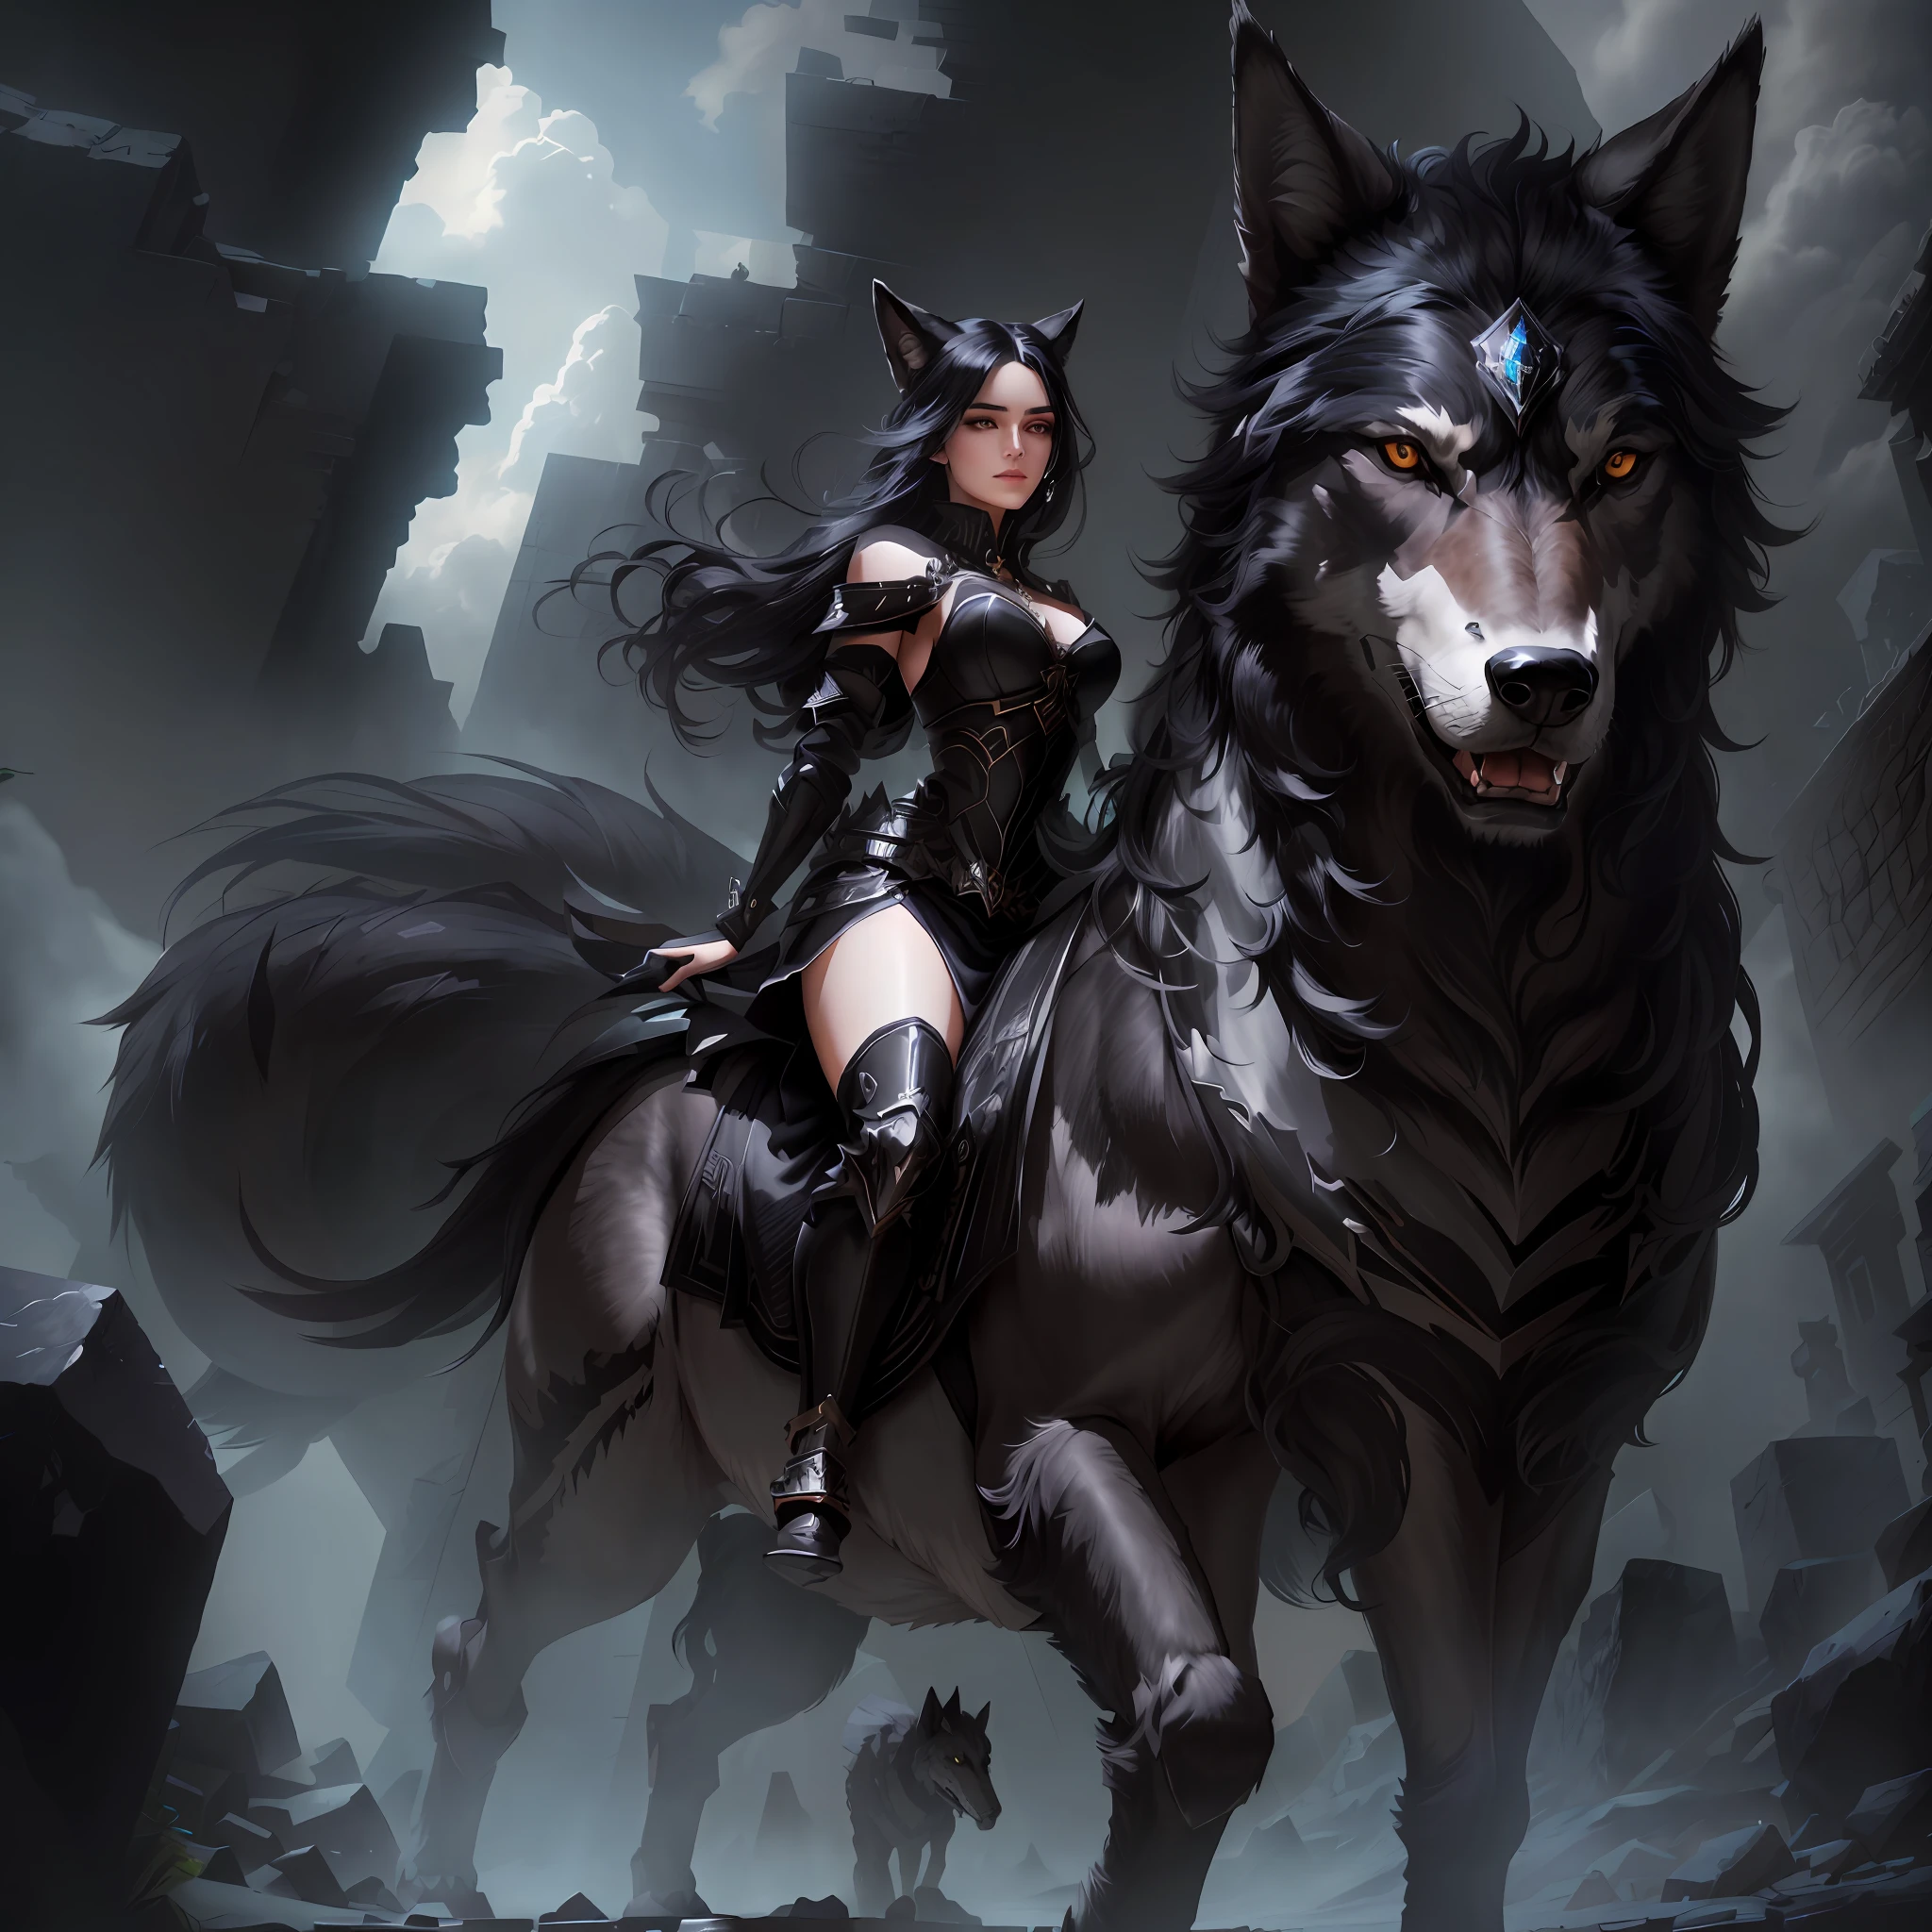 Schöne Frau, Schwarzes Haar, symmetrisch, perfekt, auf einem Wolf montiert, Riese, auf Stein treten, Diamant, mit kleinen Schritten, lauert auf dem Schlachtfeld. realistisches Bild, hohe Qualität 4K, realistisches Bild